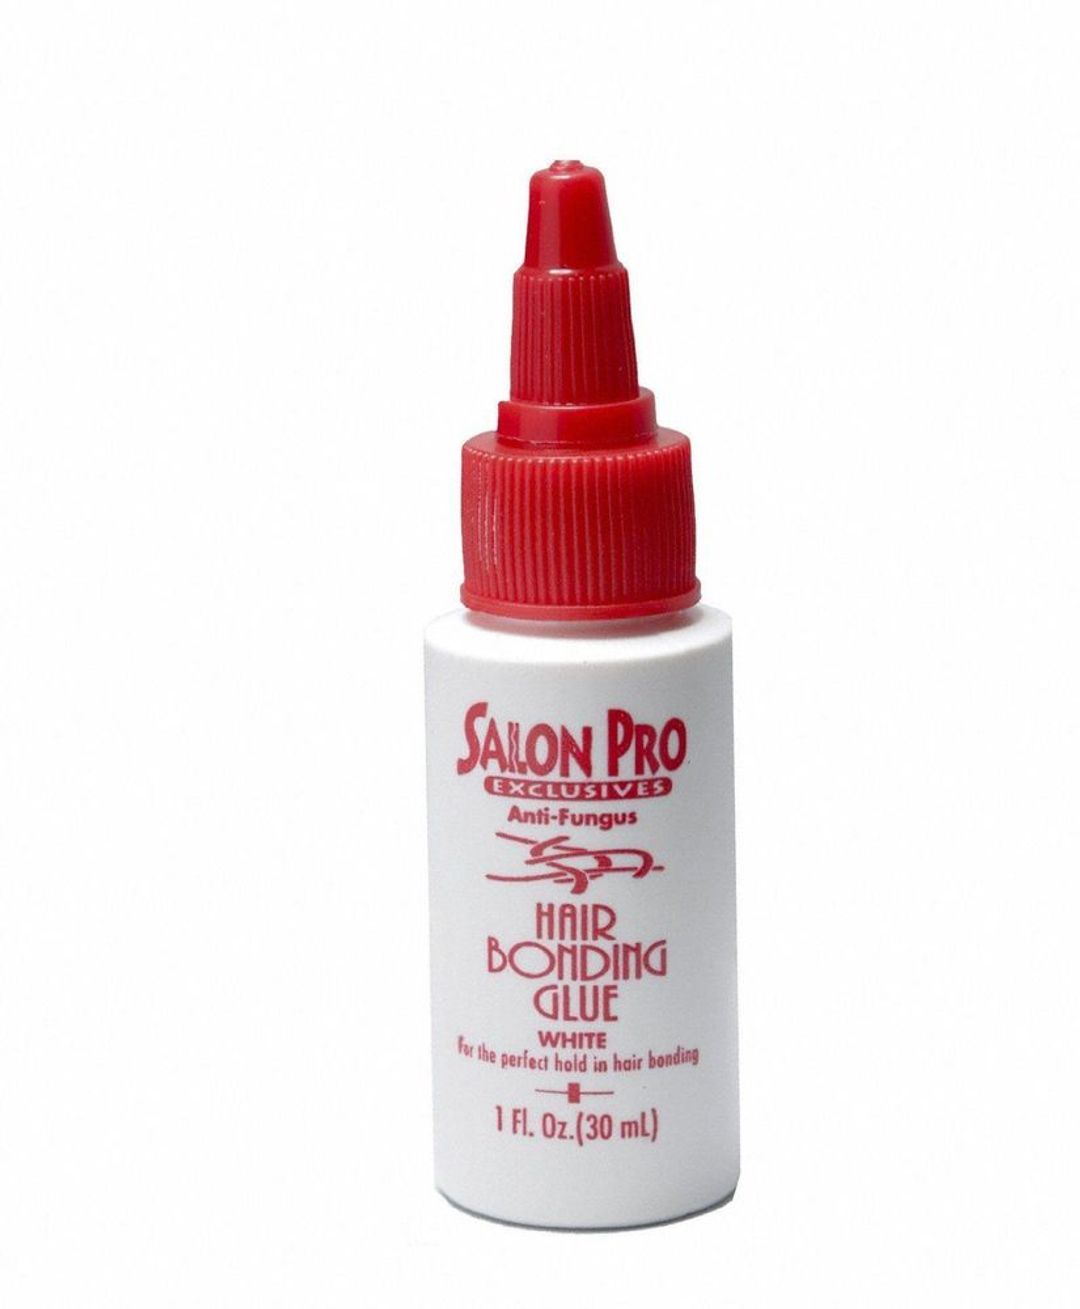 Salon Pro Exclusive Anti-fungus Hair Bonding Glue - White - 1oz